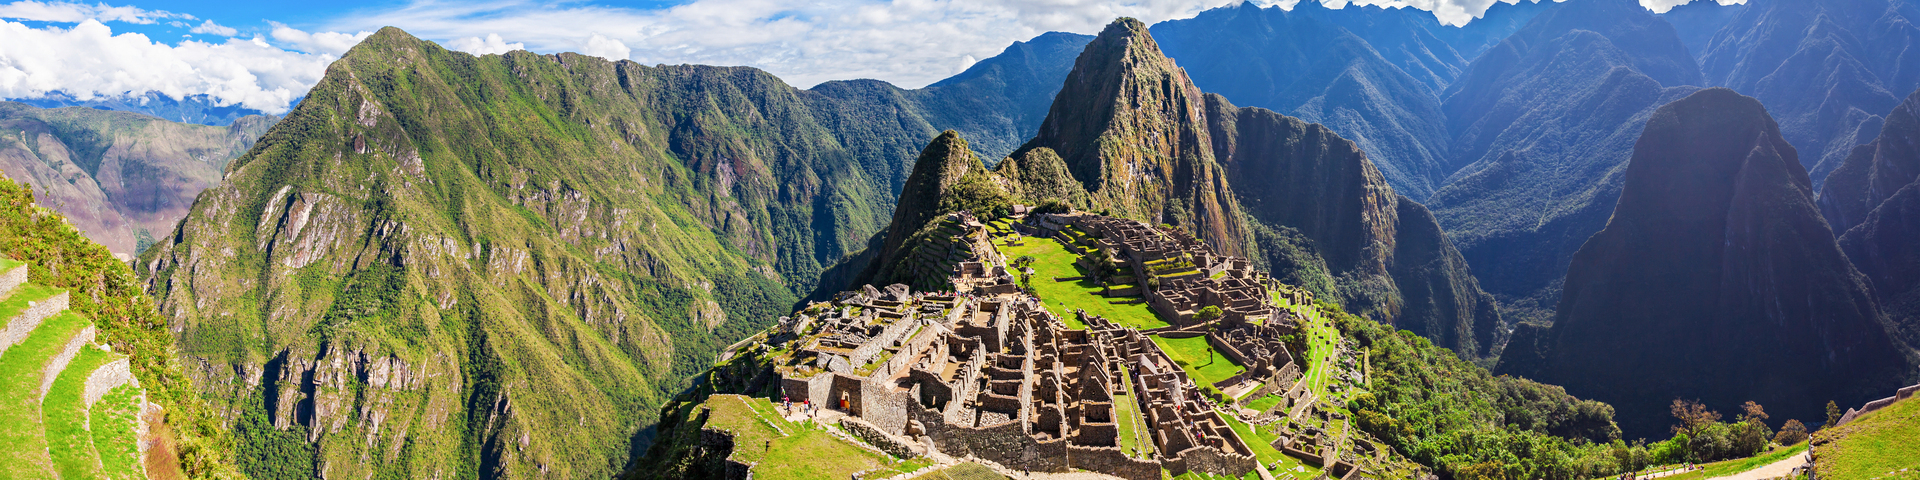 Peruvian Amazon & Machu Picchu Exploration